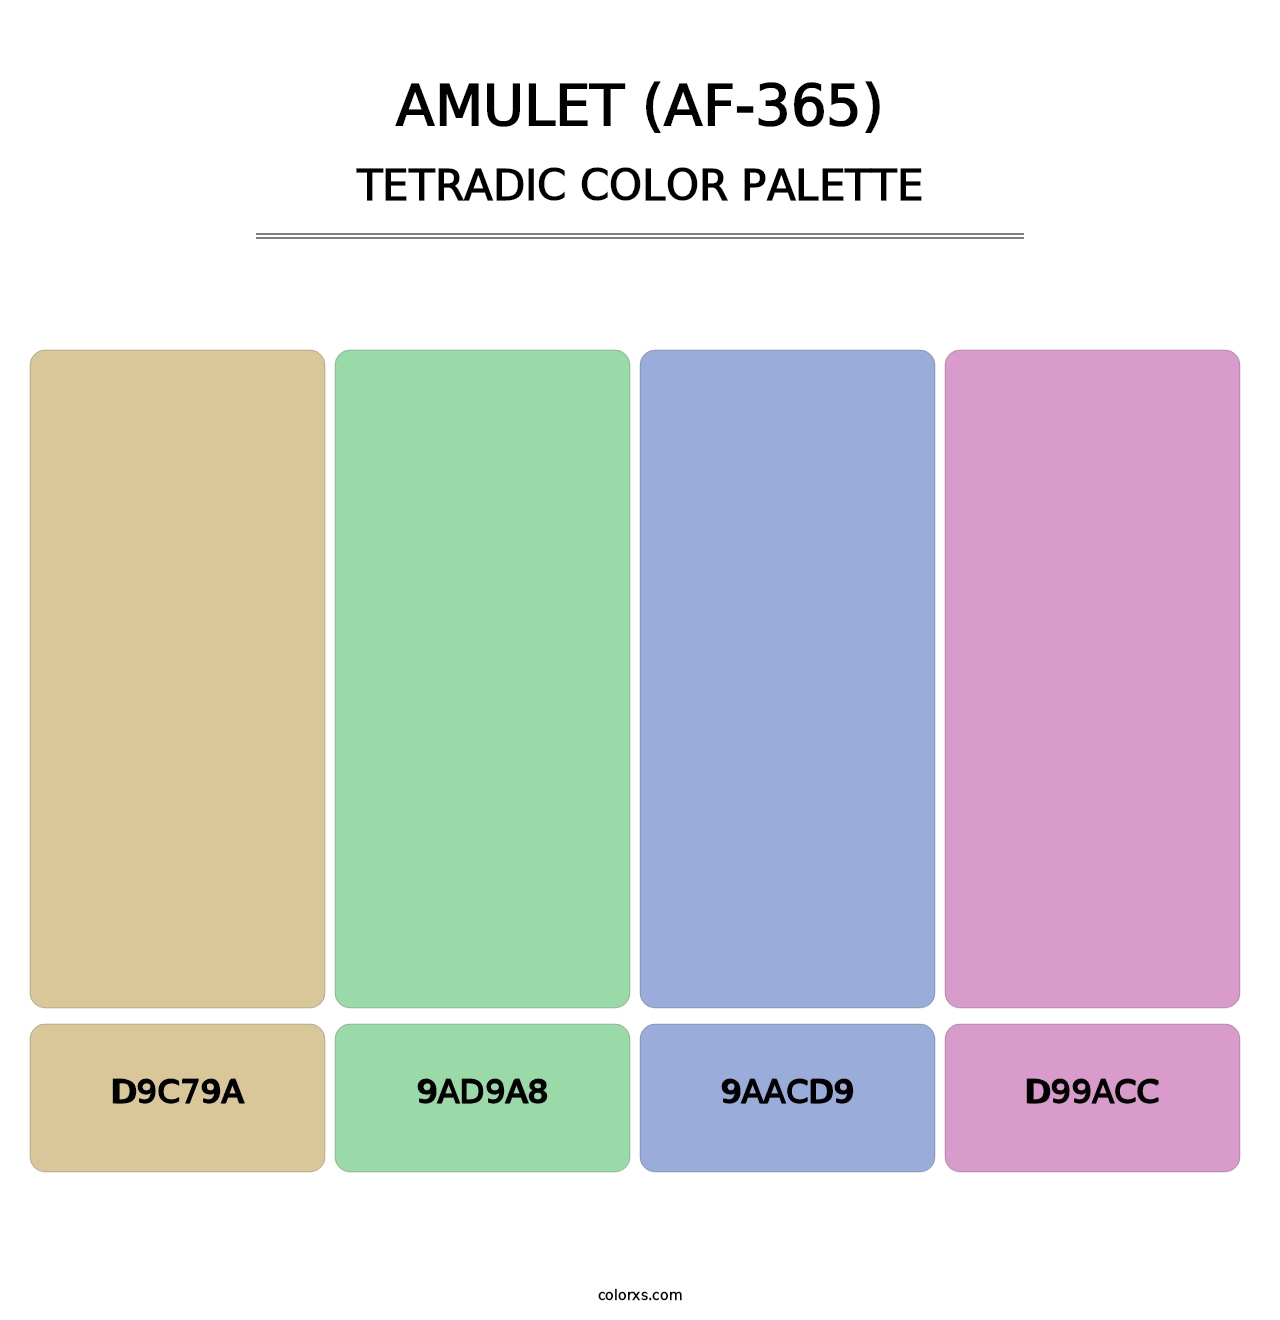 Amulet (AF-365) - Tetradic Color Palette